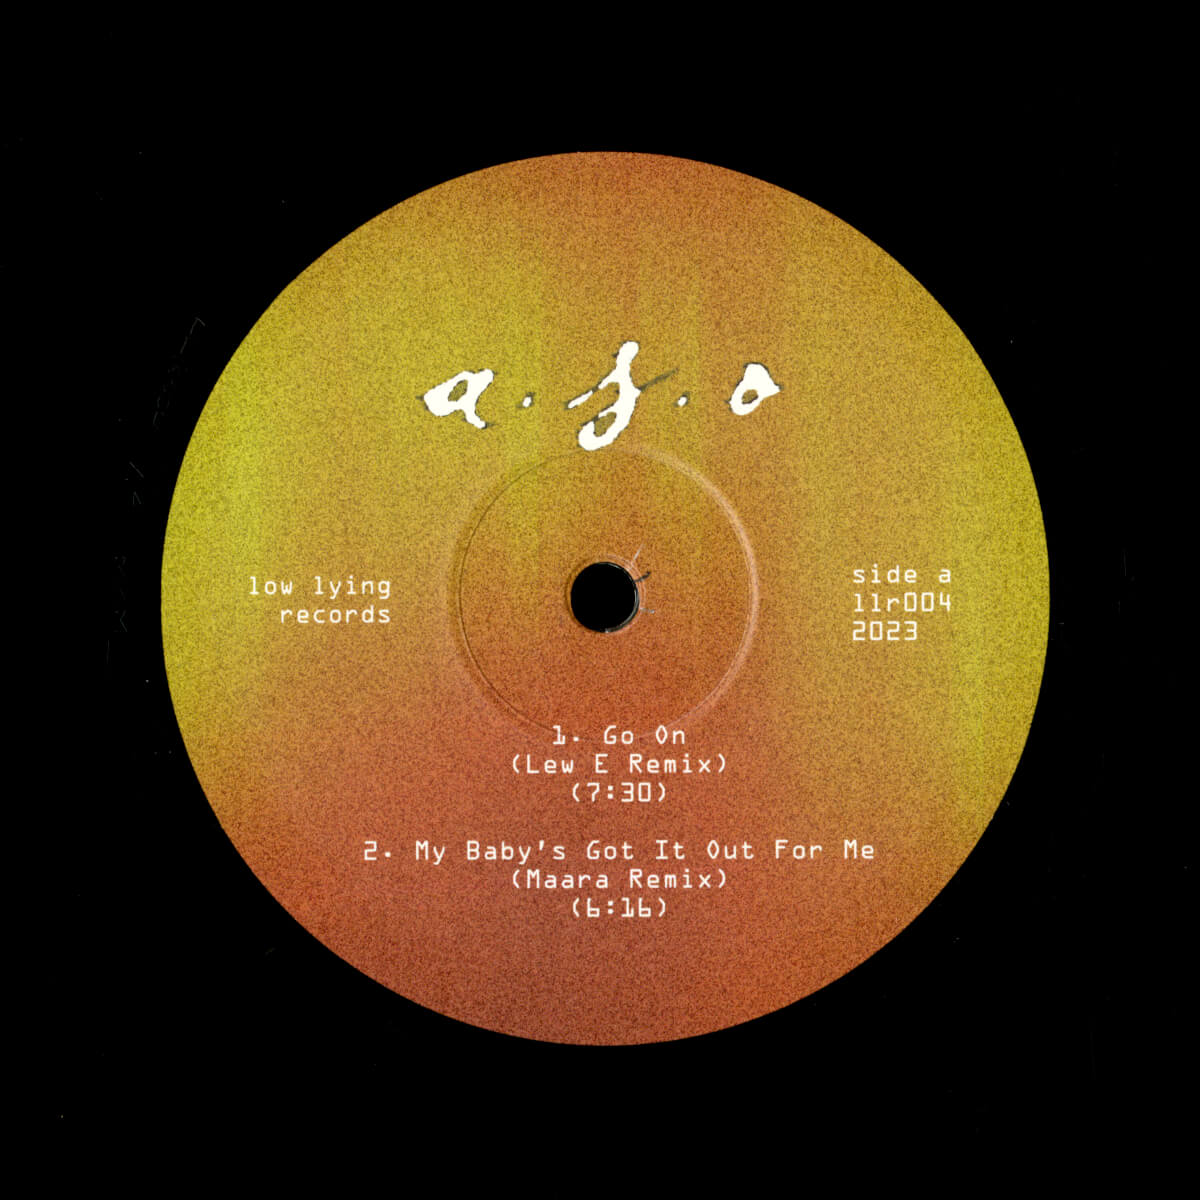 a.s.o. – a.s.o. remixed